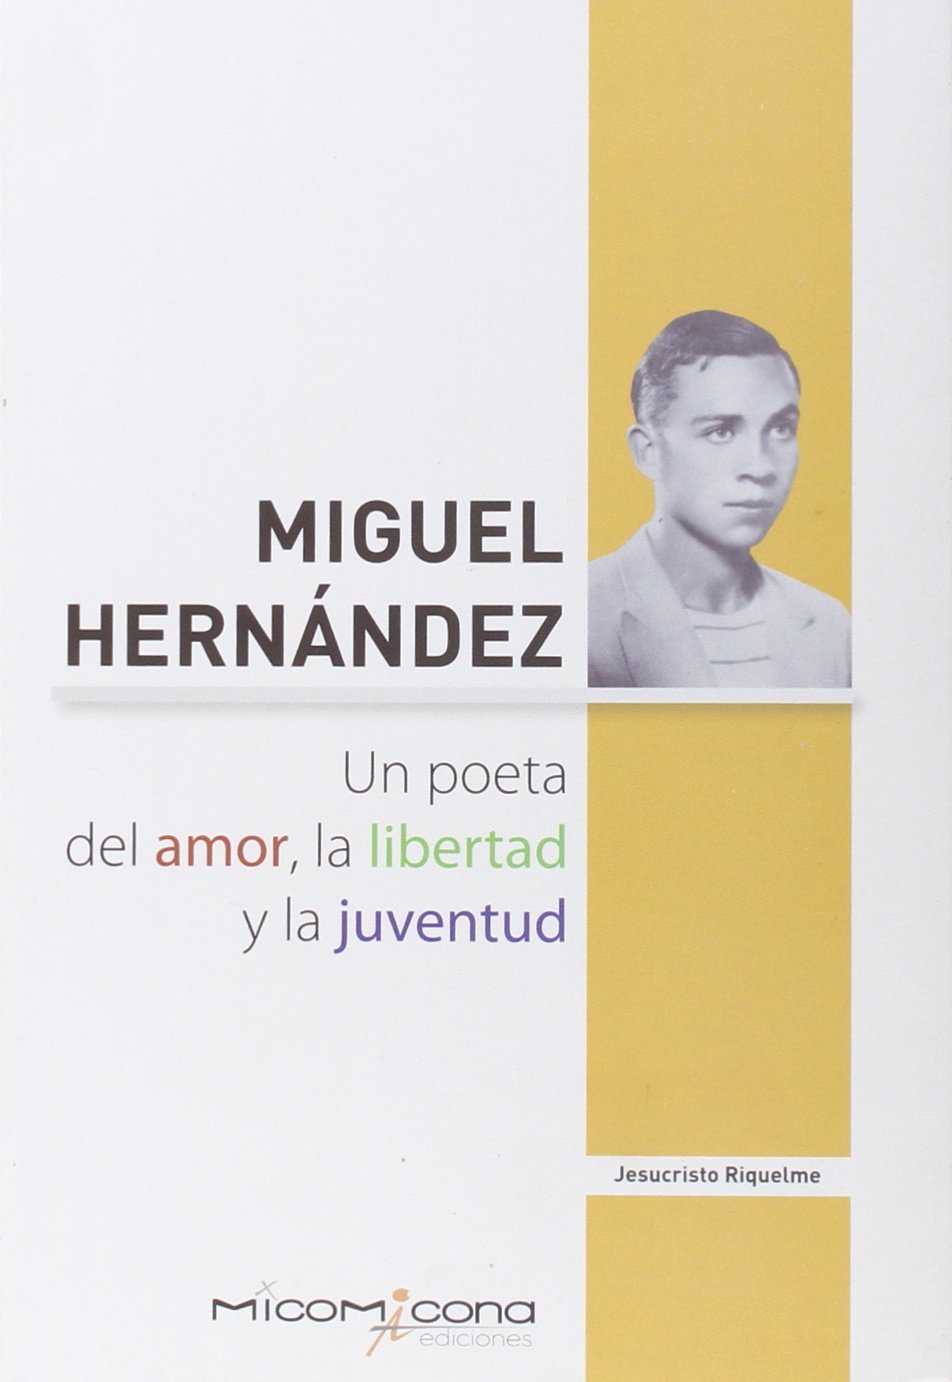 MIGUEL HERNANDEZ UN POETA DEL AMOR,LA LIBERTAD Y LA JUVENT